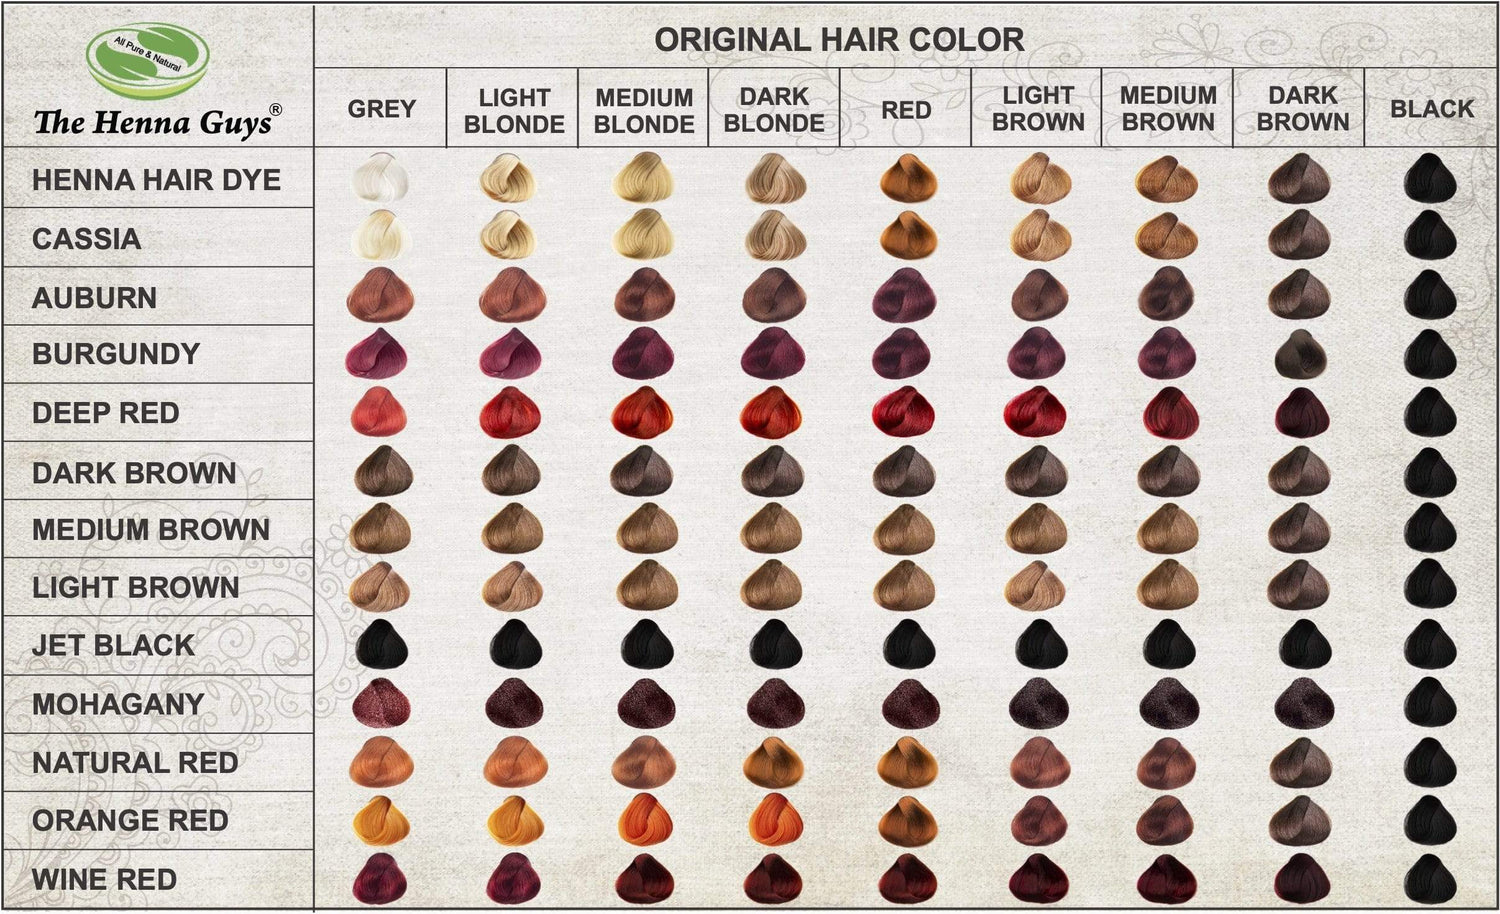 https://www.thehennaguys.com/cdn/shop/products/orange-red-henna-hair-dye-15179951472729_1500x.jpg?v=1683737028